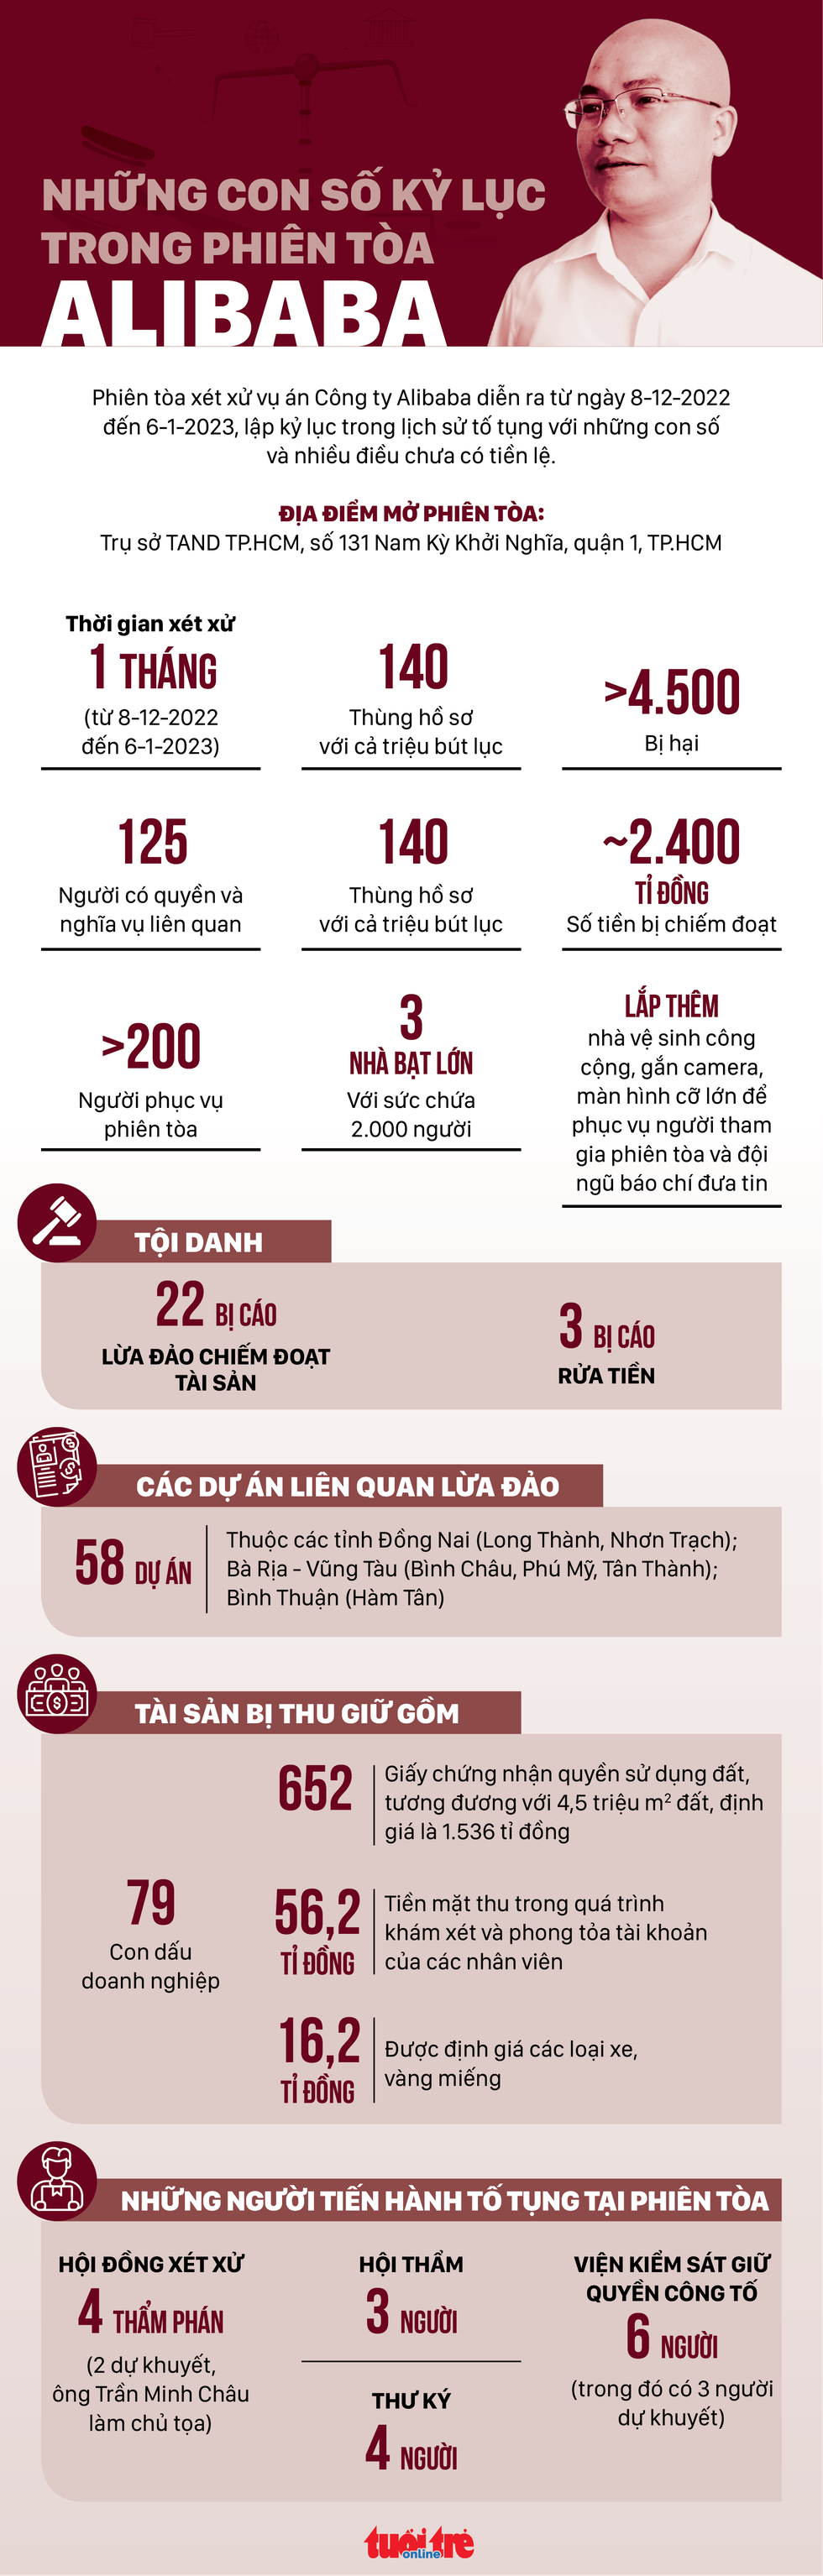 Những con số kỷ lục trong phiên tòa Alibaba - Ảnh 1.